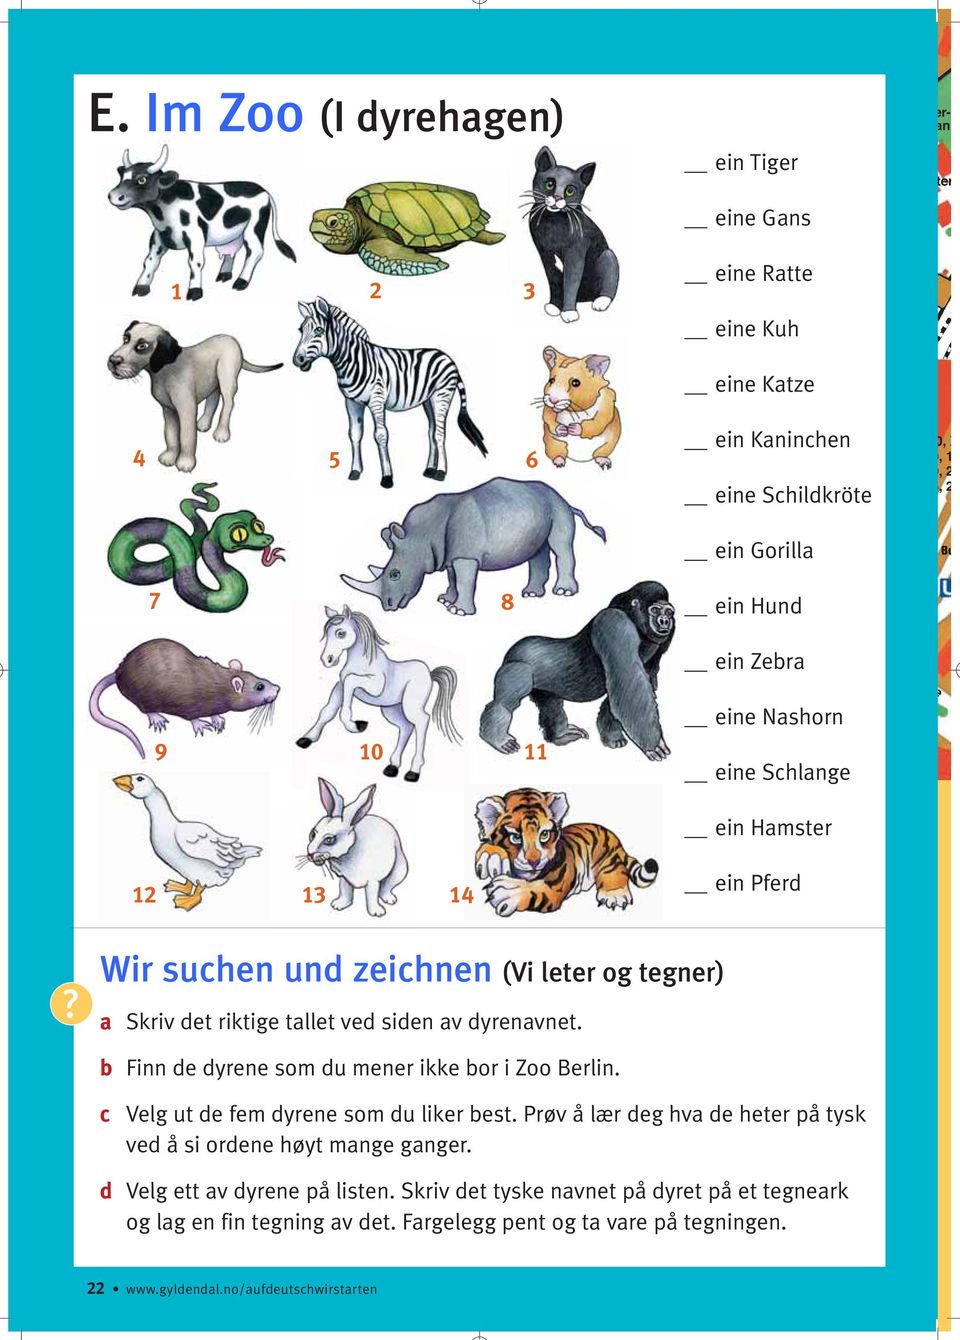 b Finn de dyrene som du mener ikke bor i Zoo Berlin. c Velg ut de fem dyrene som du liker best. Prøv å lær deg hva de heter på tysk ved å si ordene høyt mange ganger.